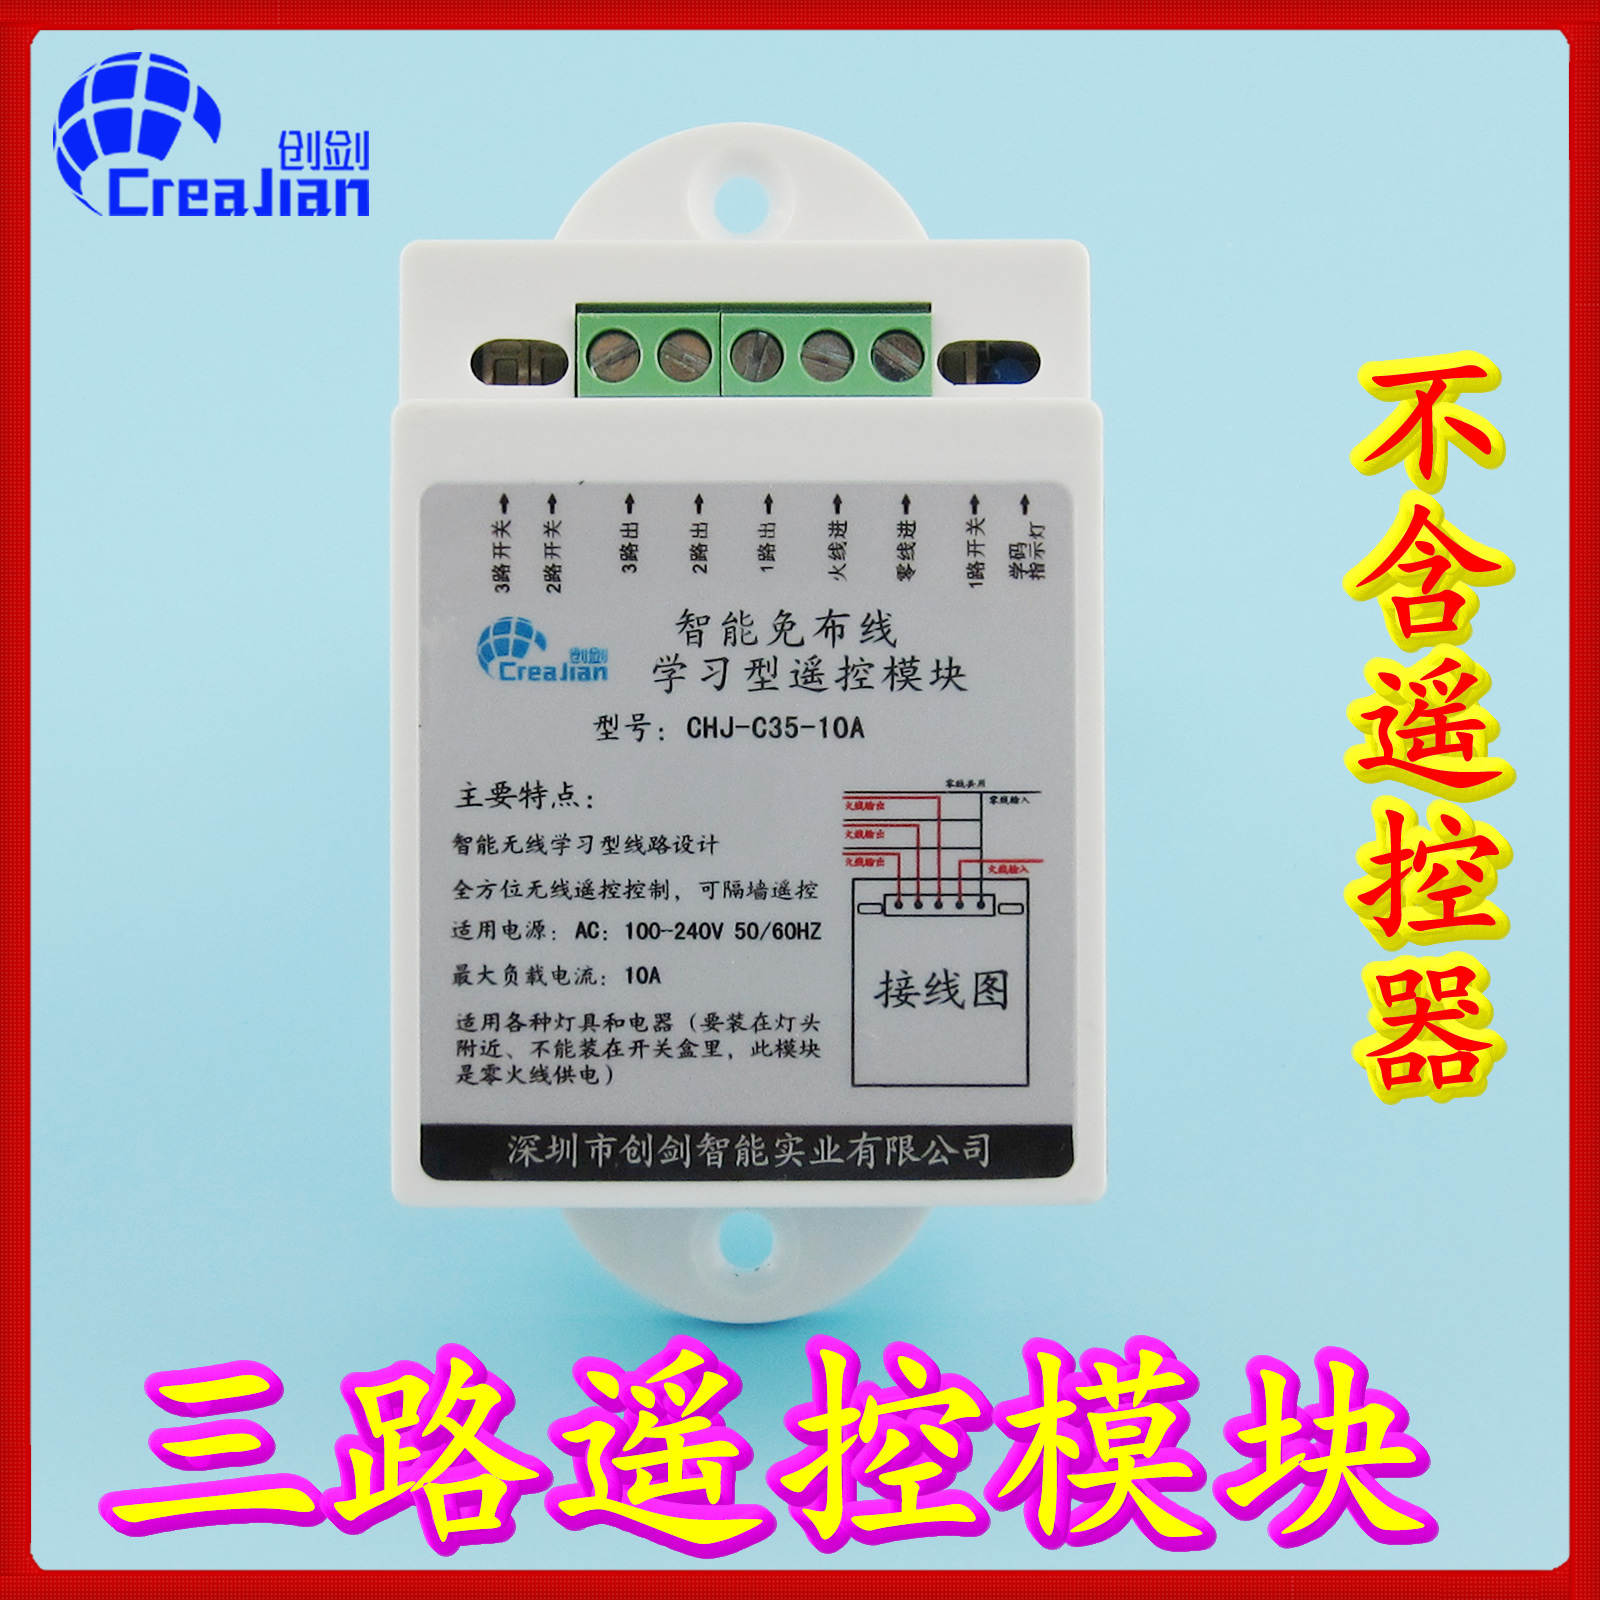 Chuangjian CreaJian wireless remote control switch three-way remote control module controller 220V high power 10A